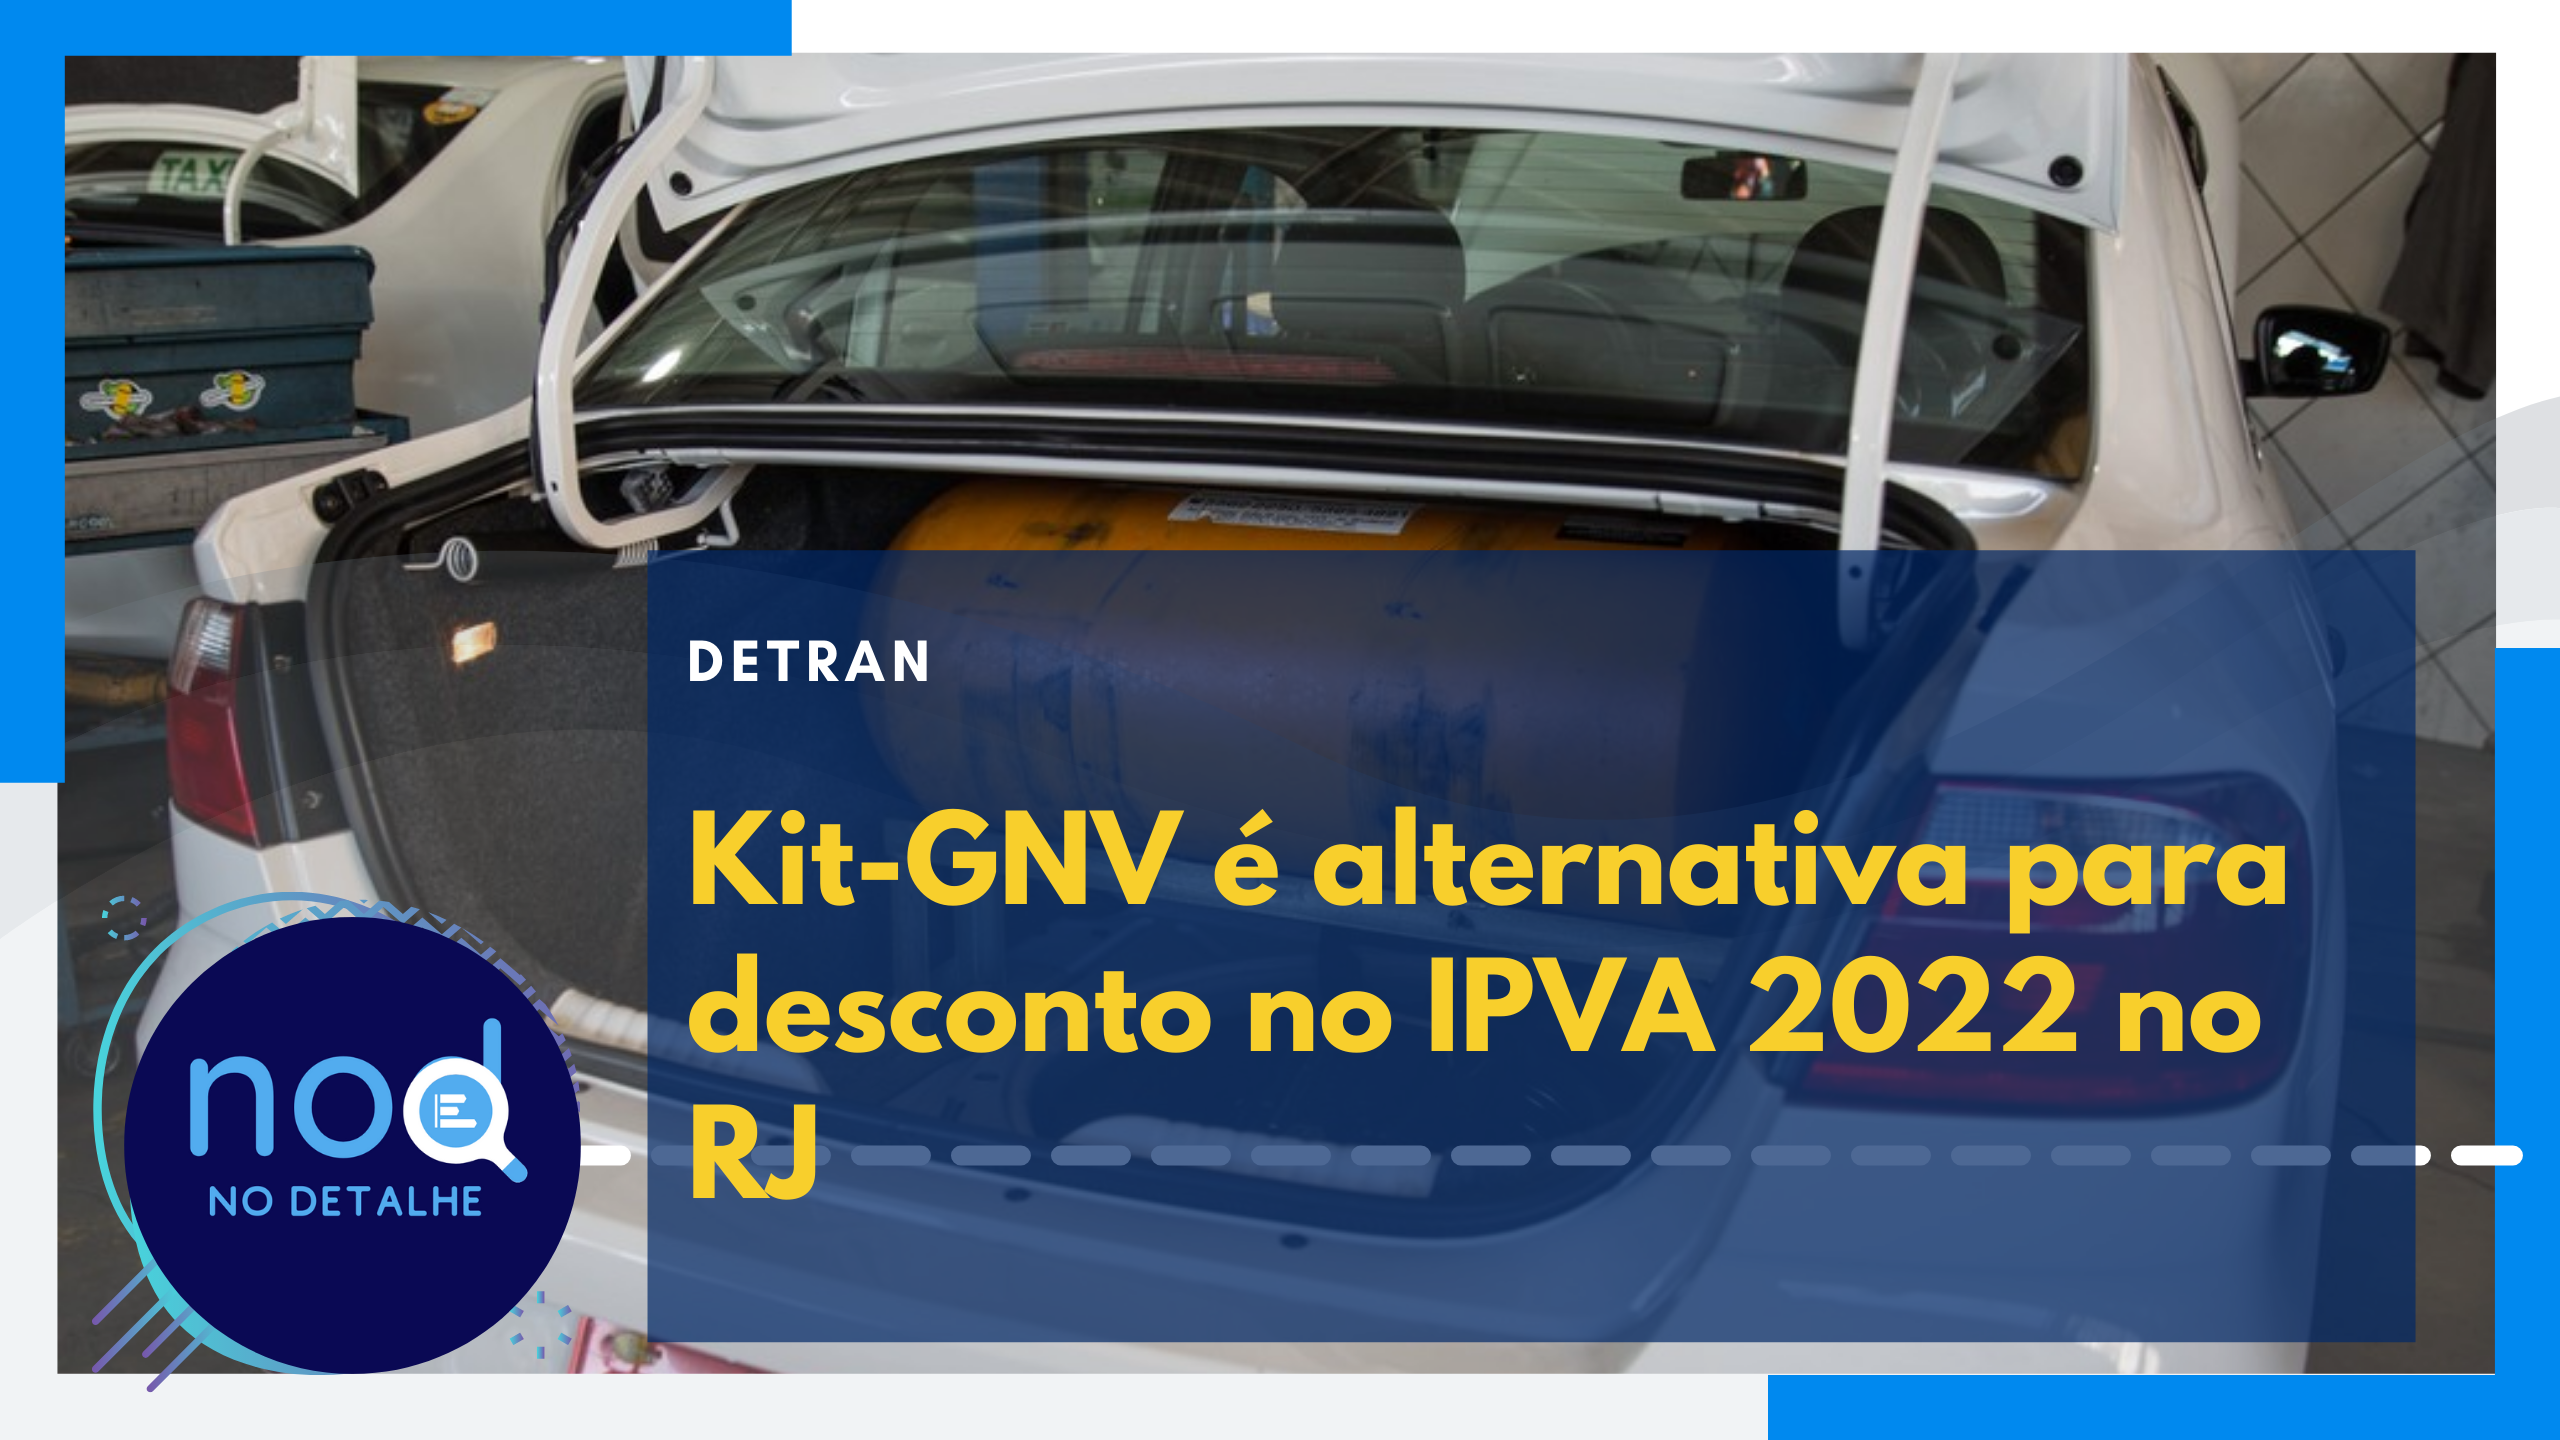 IPVA 2022: Kit-GNV é alternativa para desconto no IPVA 2022 no RJ. Entenda o caso